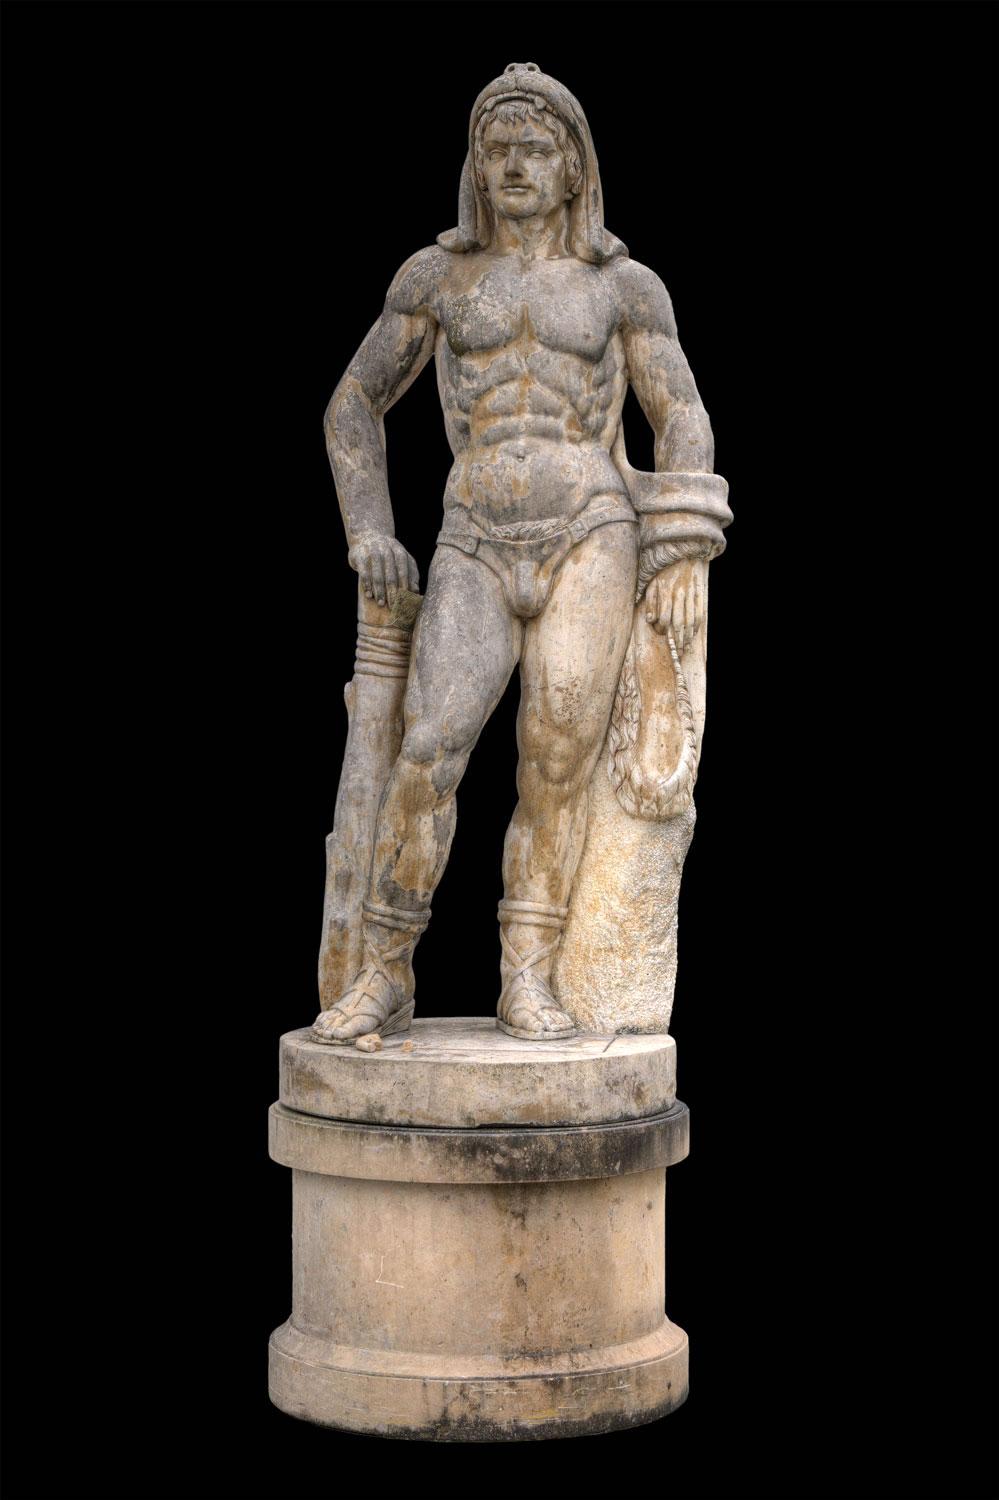  Monumentale italienische Rationalistische Marmorskulpturen von Herkules und Discobolo (Braun), Nude Sculpture, von Unknown